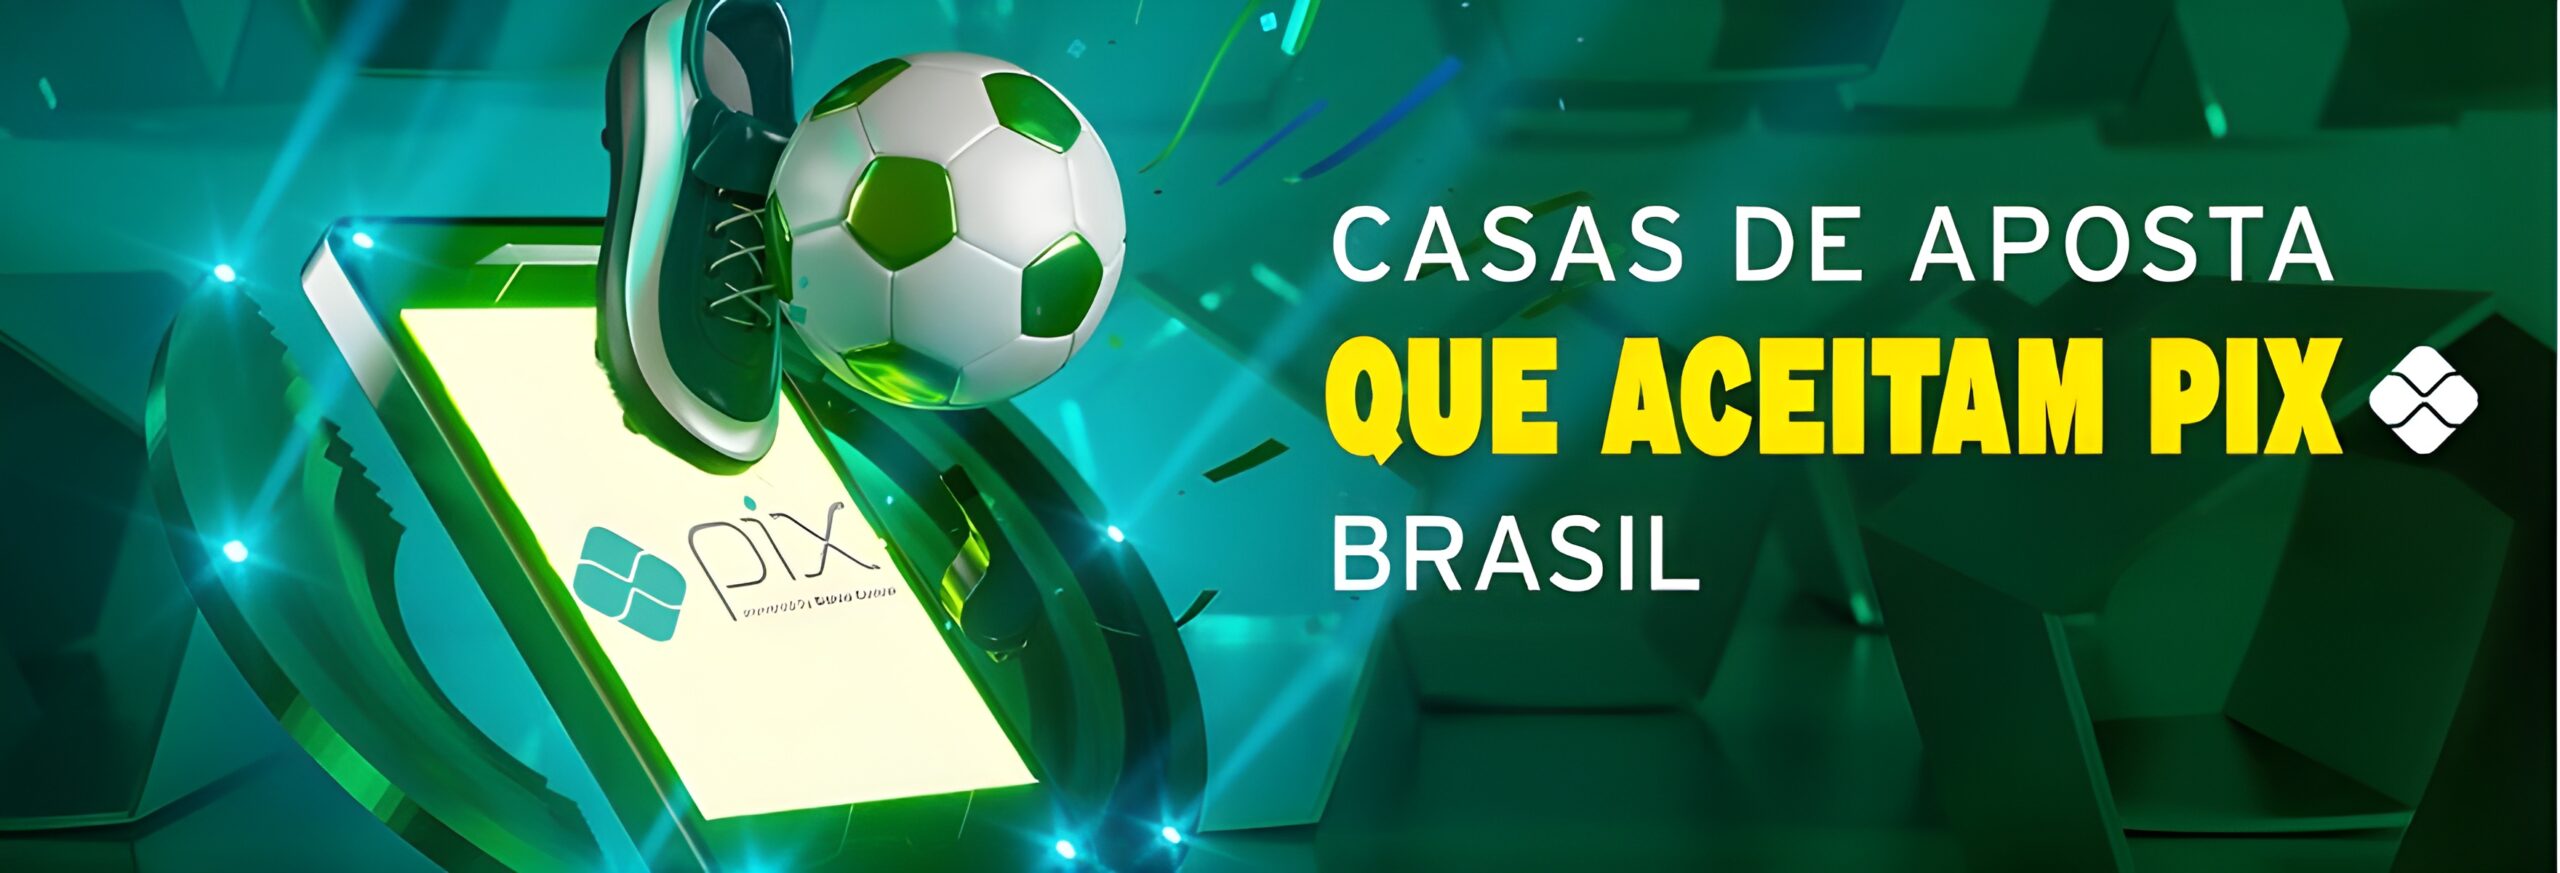 futebol facil bet.com.br